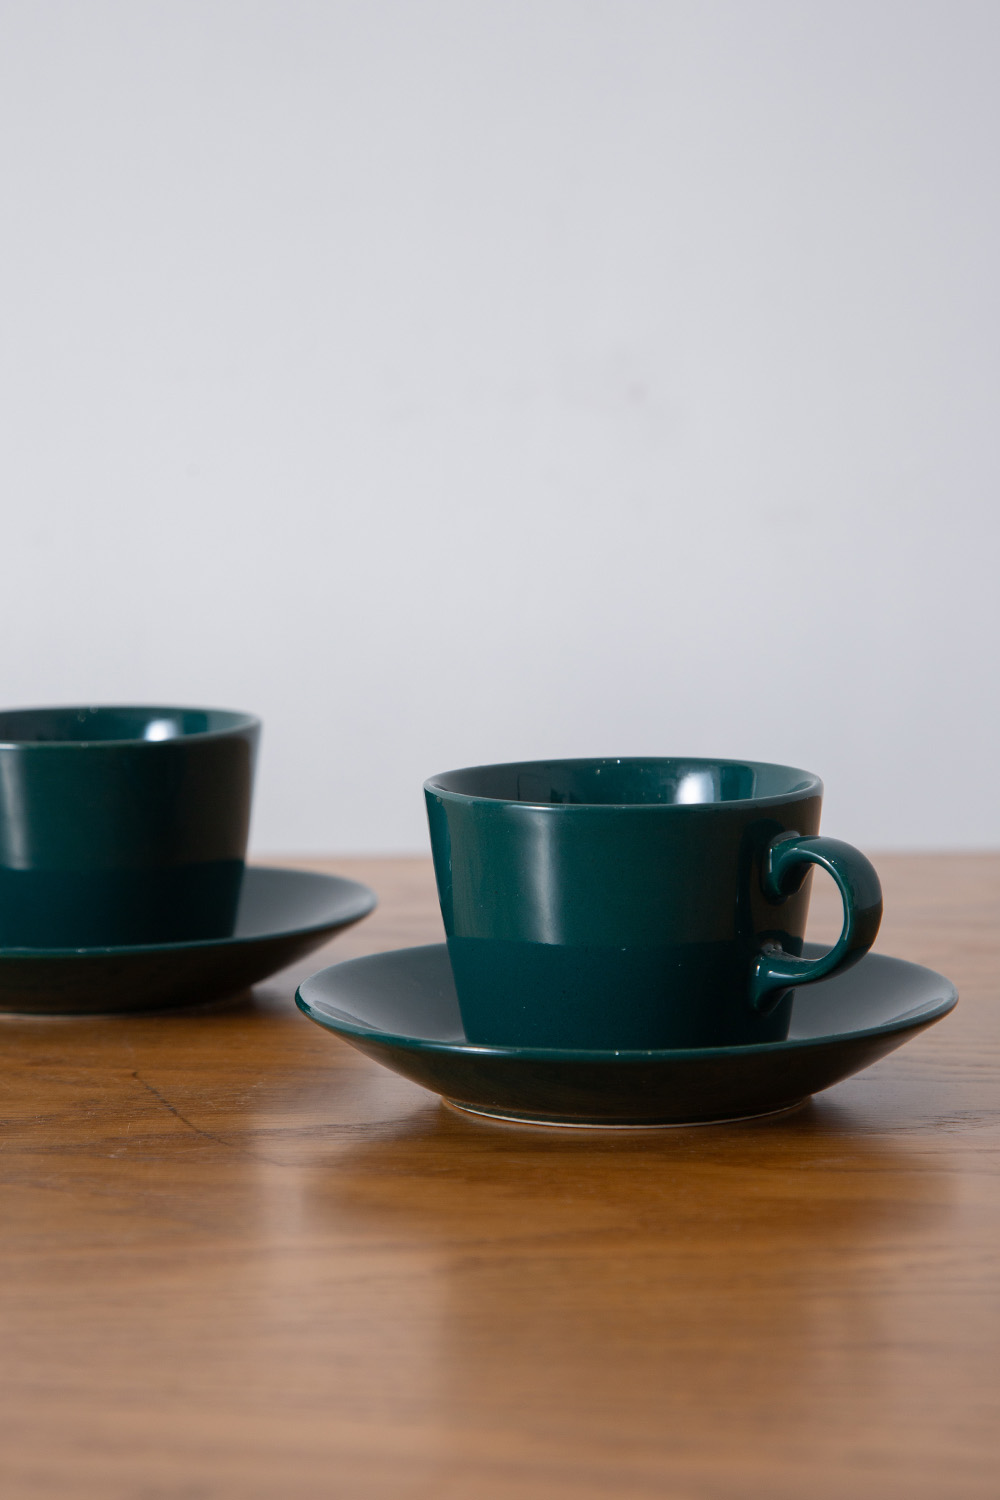 stoop | Cup&Saucer “KILTA” for ARABIA by Kaj Franck in Green